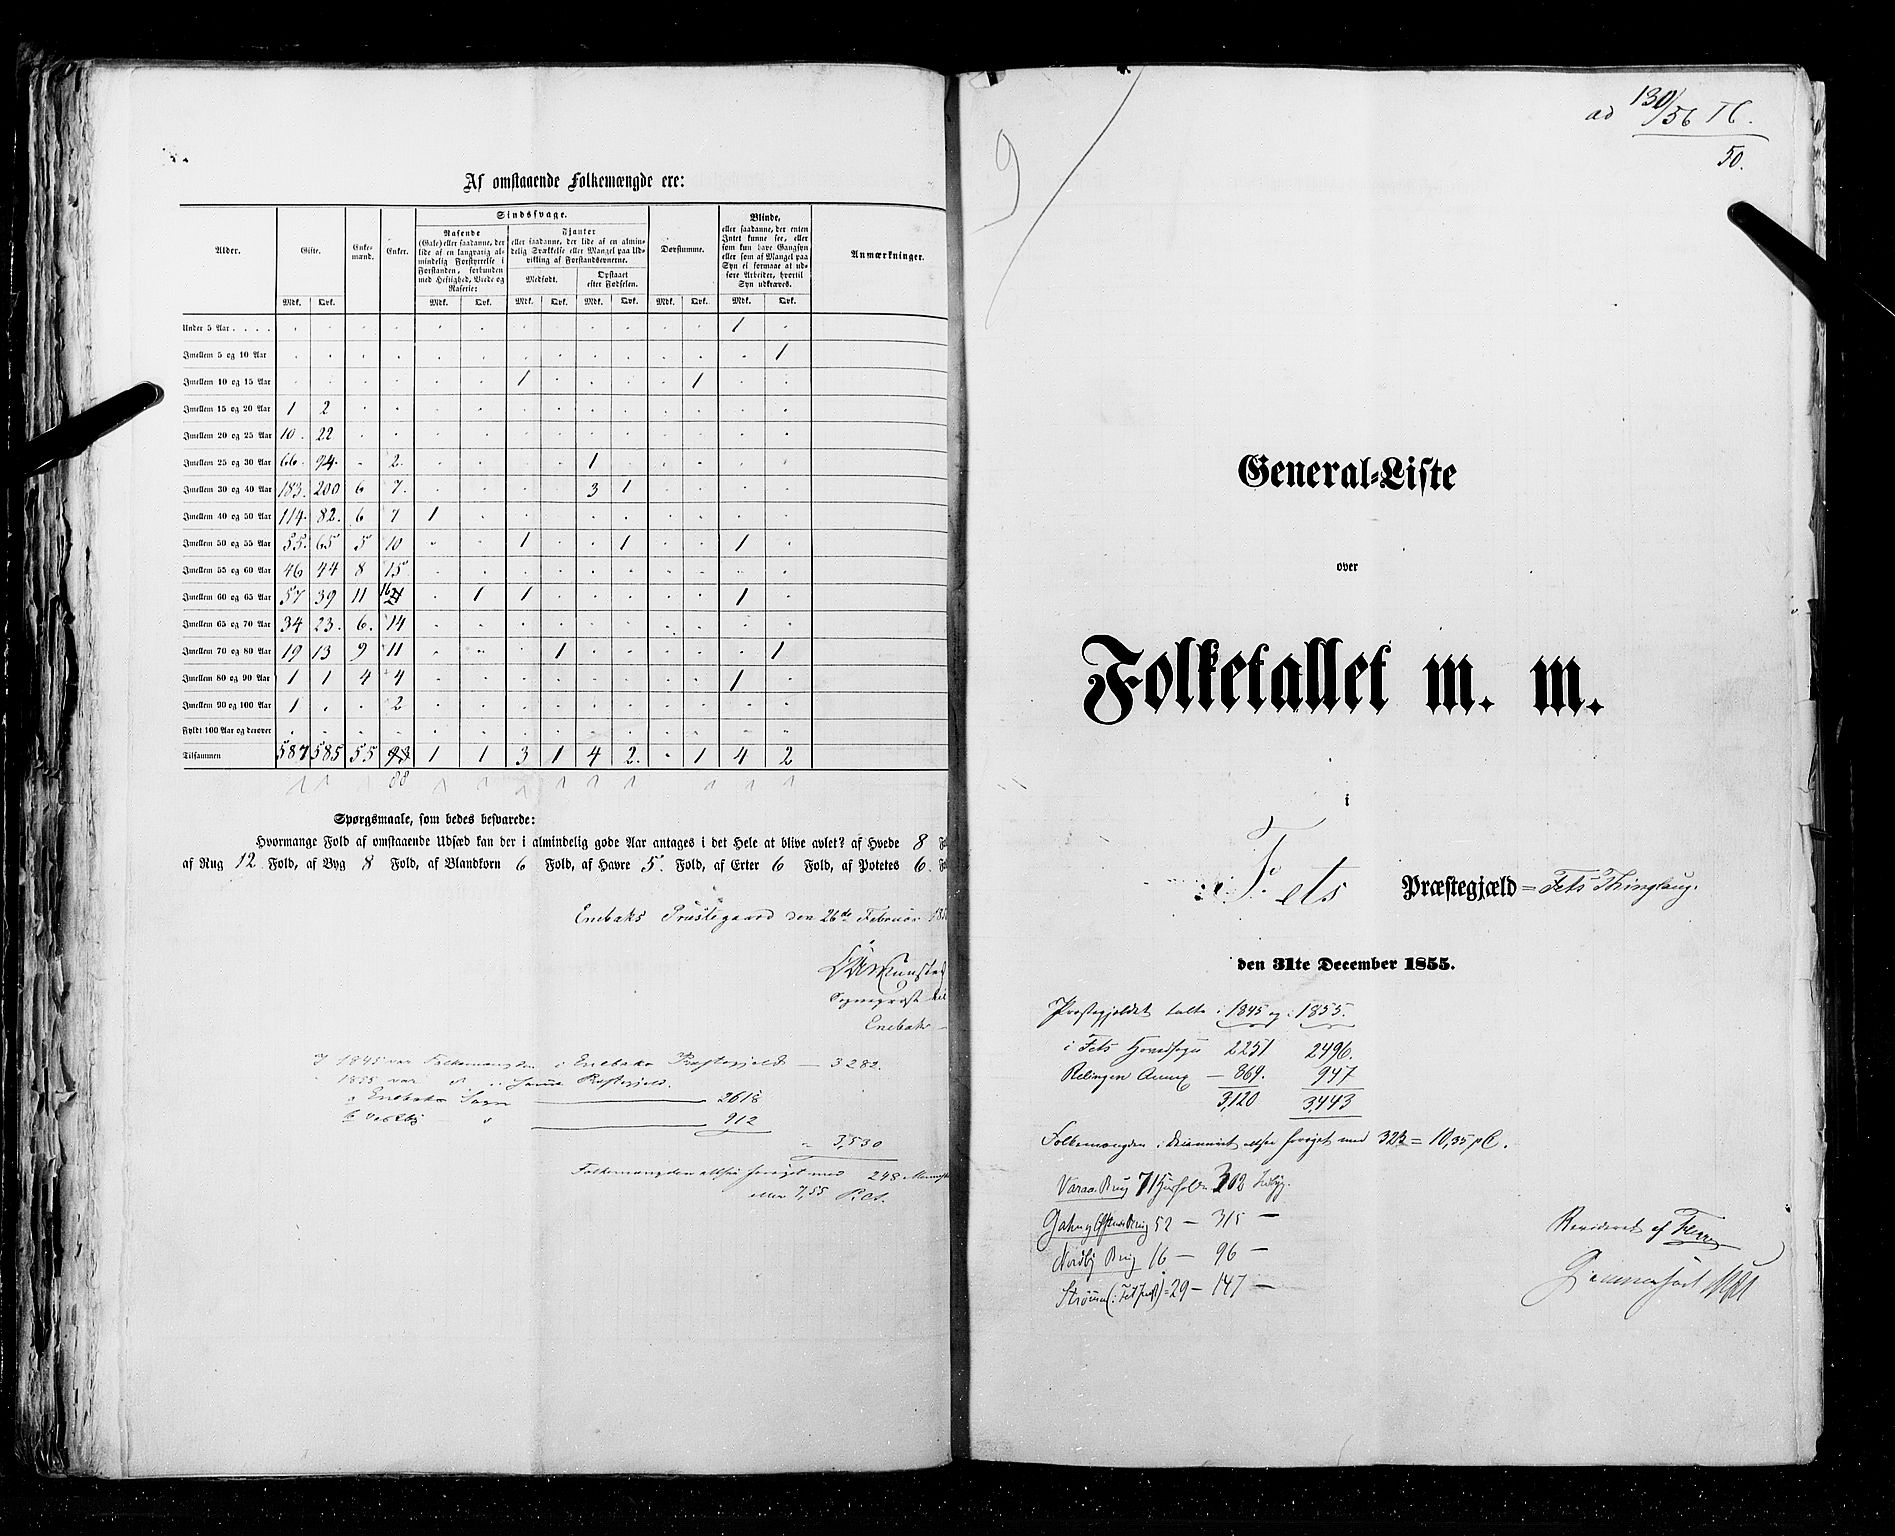 RA, Folketellingen 1855, bind 1: Akershus amt, Smålenenes amt og Hedemarken amt, 1855, s. 50